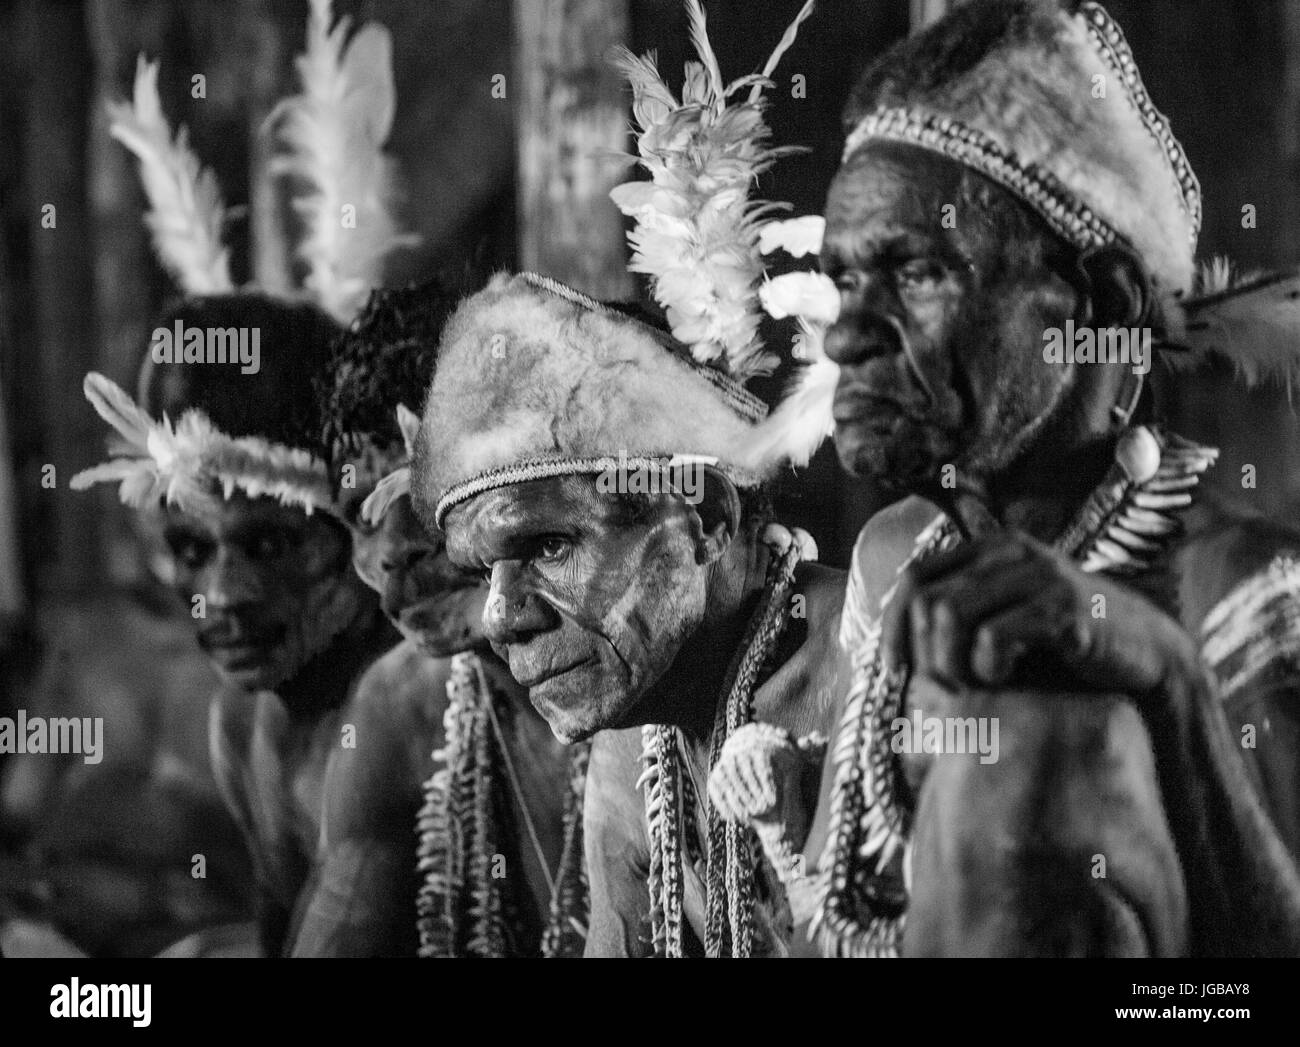 Indonesien, IRIAN JAYA, ASMAT Provinz, JOW Dorf - Juni 12: Krieger Asmat Stamm ist in traditionellen Kopfschmuck und Kriegsbemalung zu Hause sitzen. Stockfoto